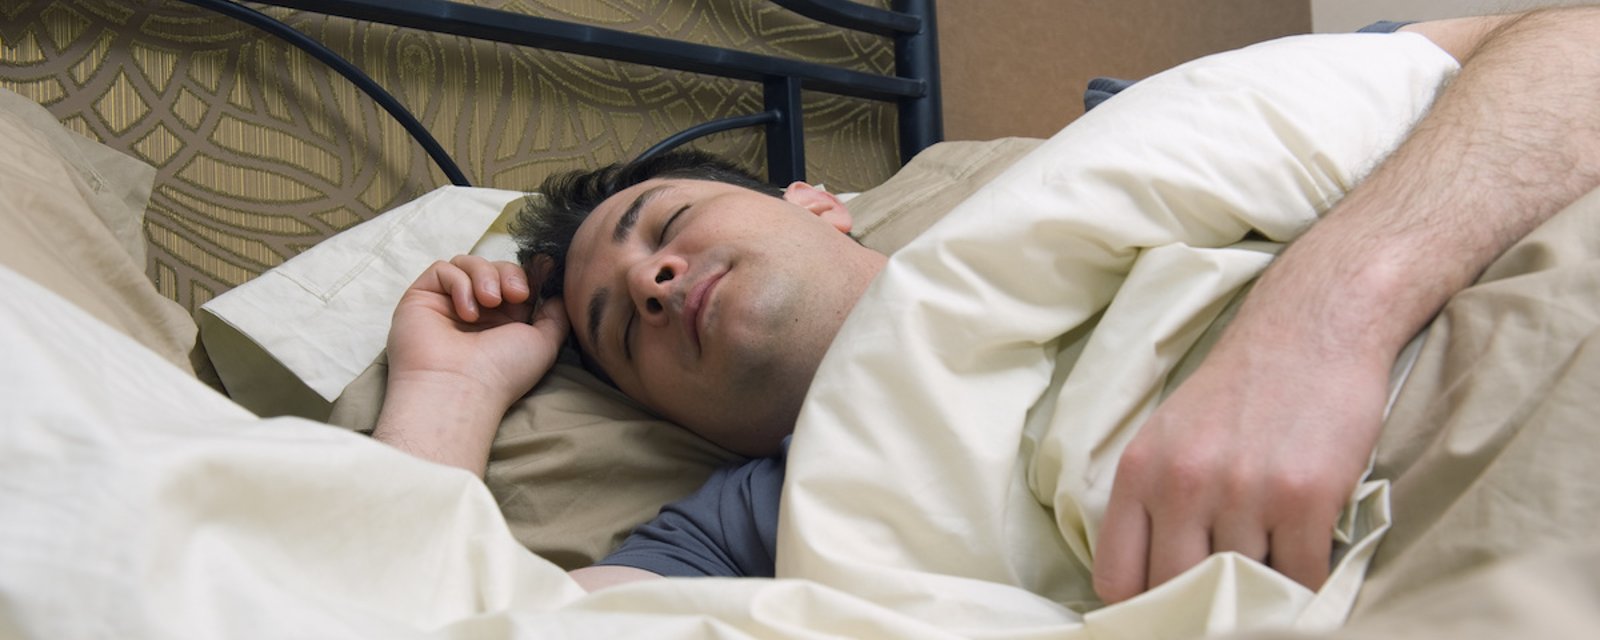 Une technique dite infaillible permettrait de s’endormir en quelques minutes